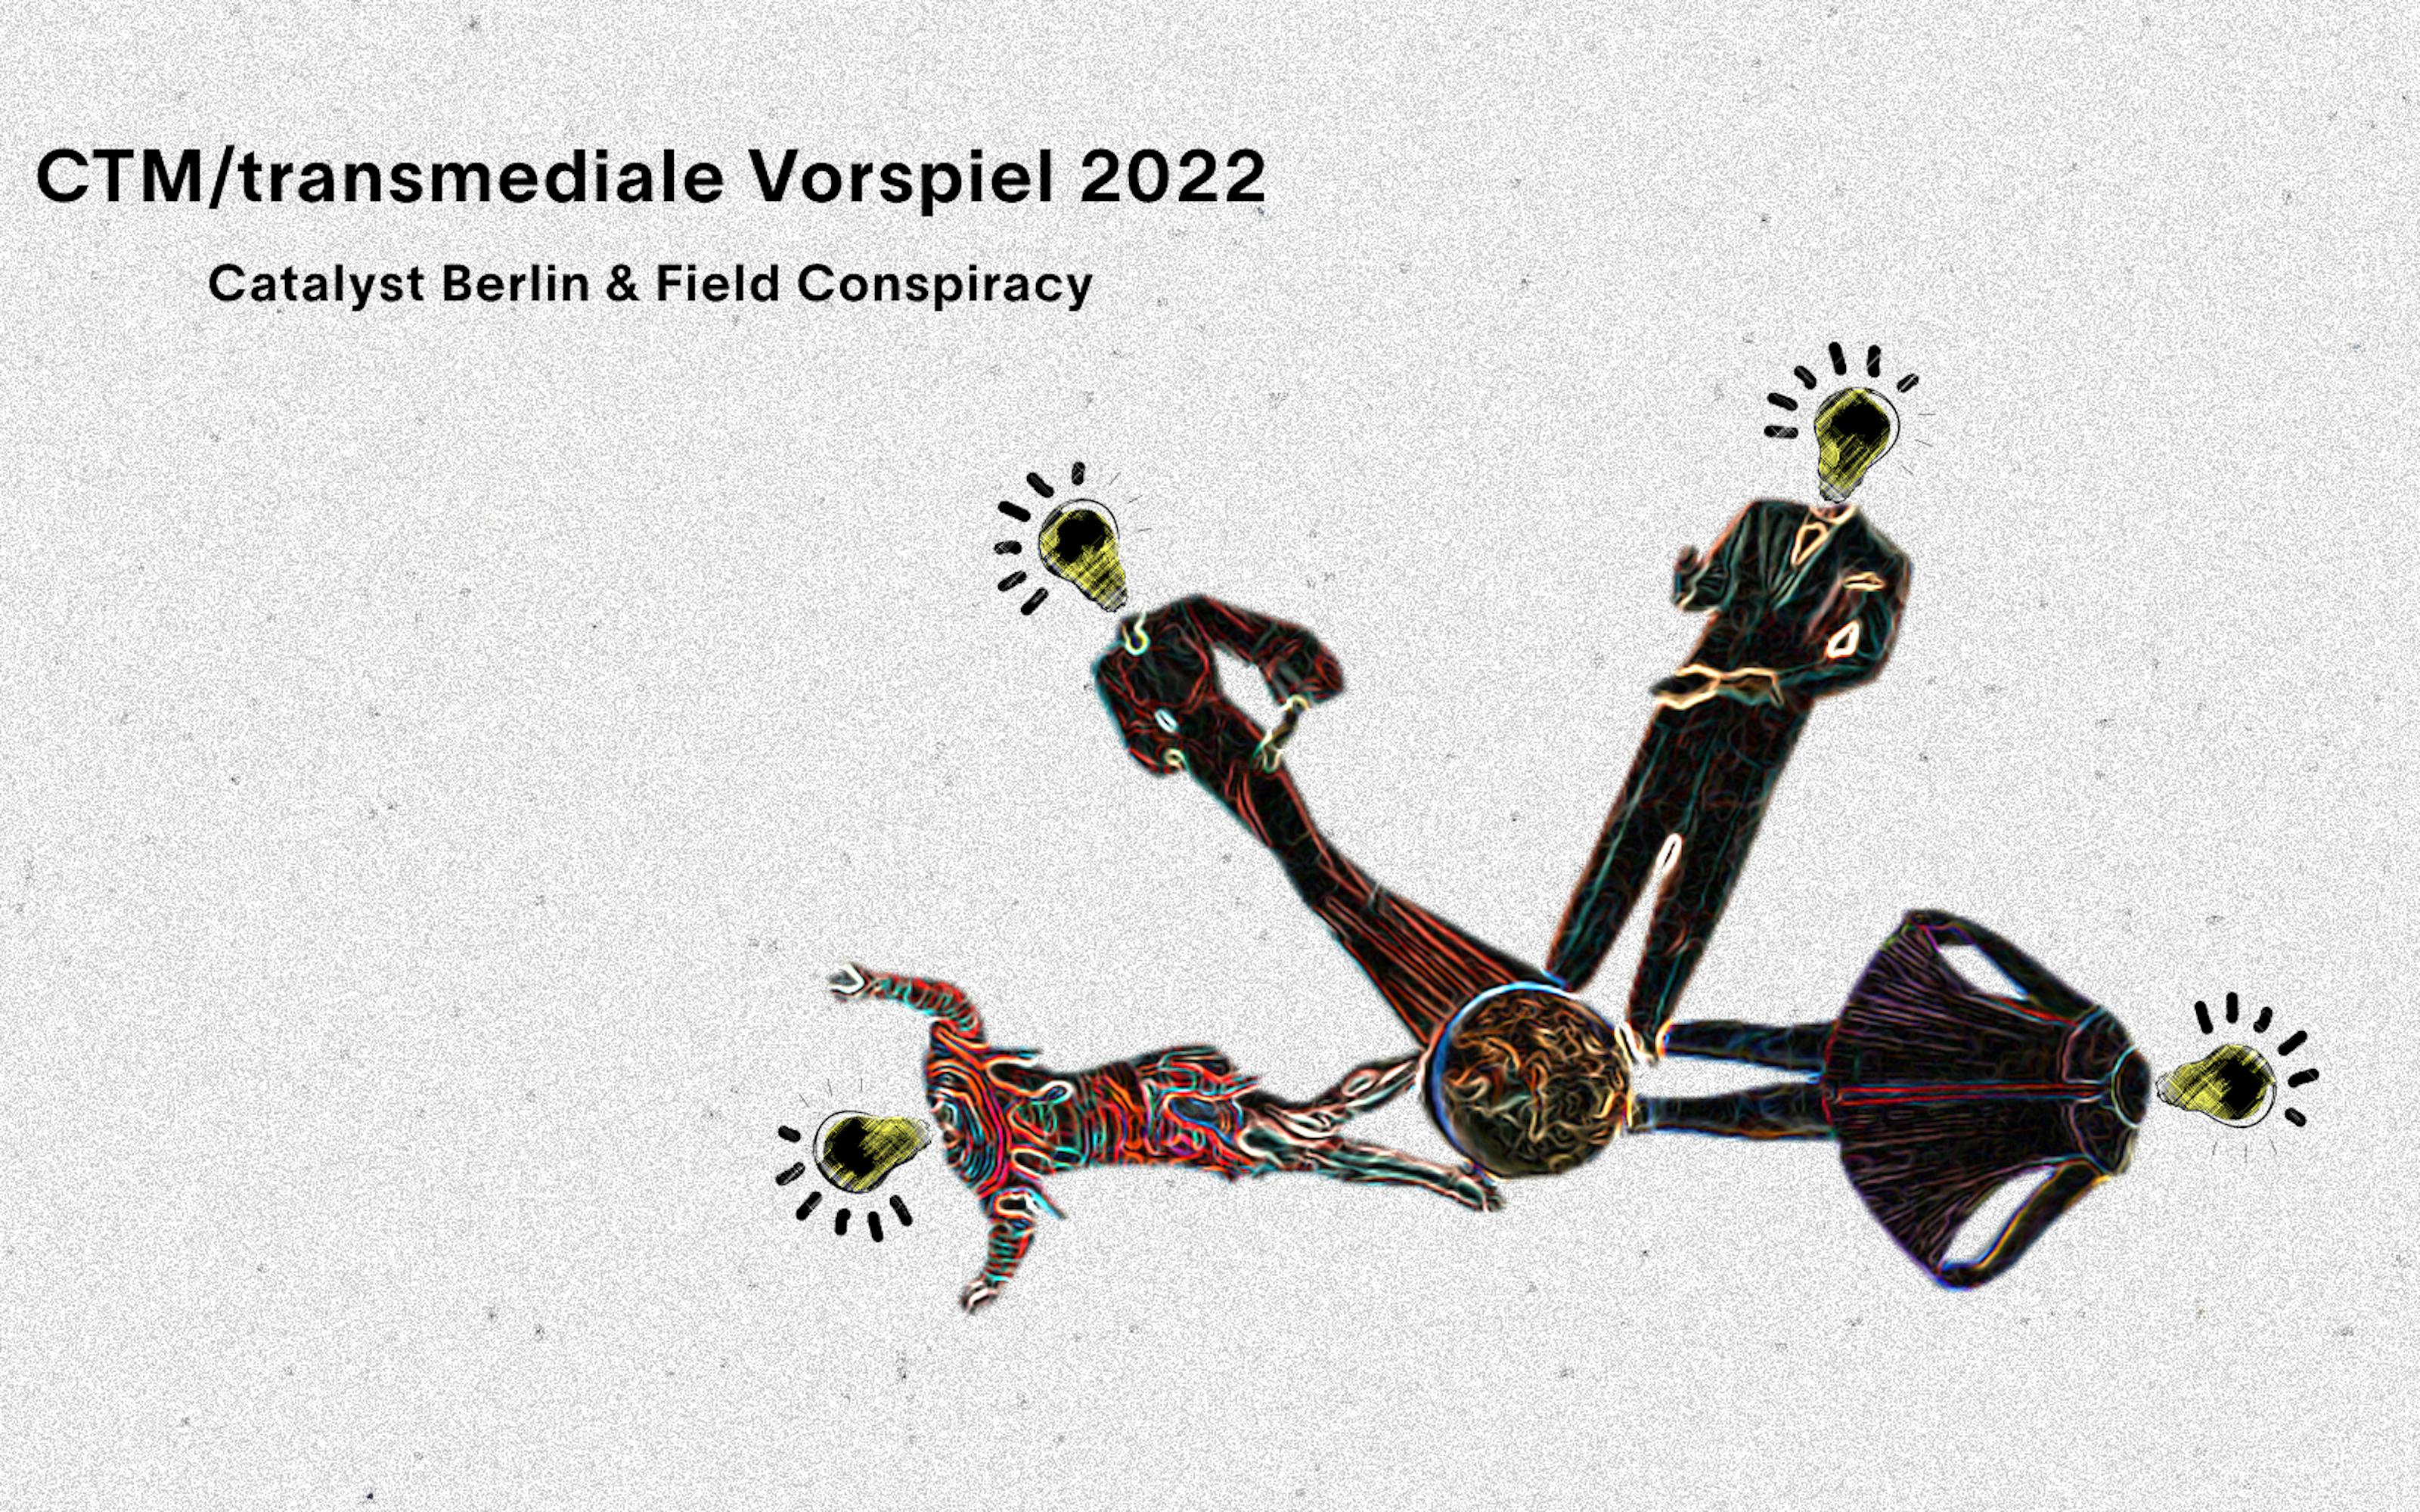 Field Conspiracy x Catalyst Berlin - CTM Vorpsiel 2022